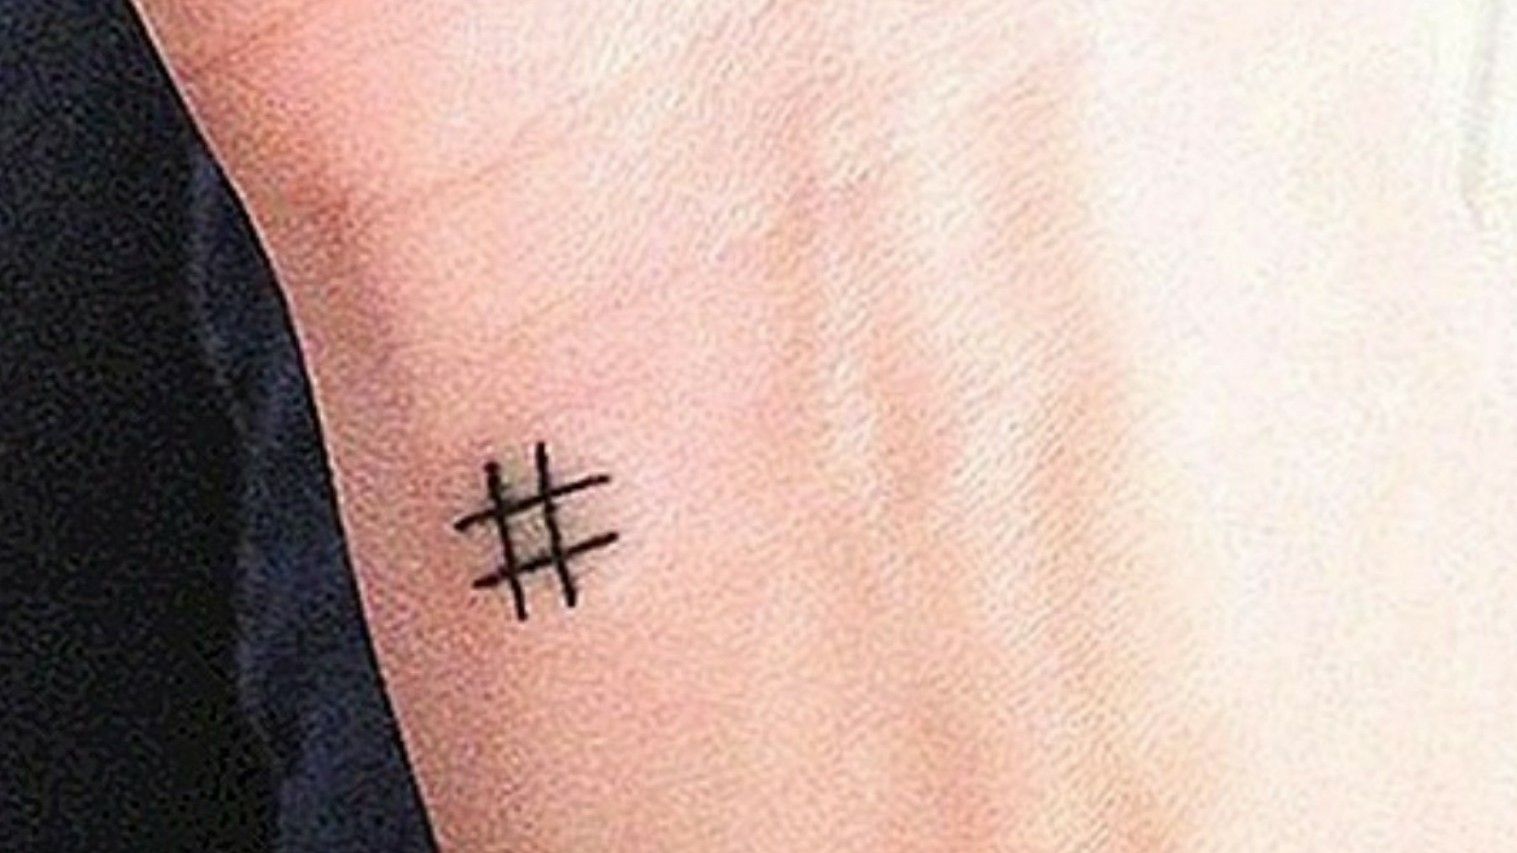 Hashtag symbol tattoo on the wrist  Tattoogridnet